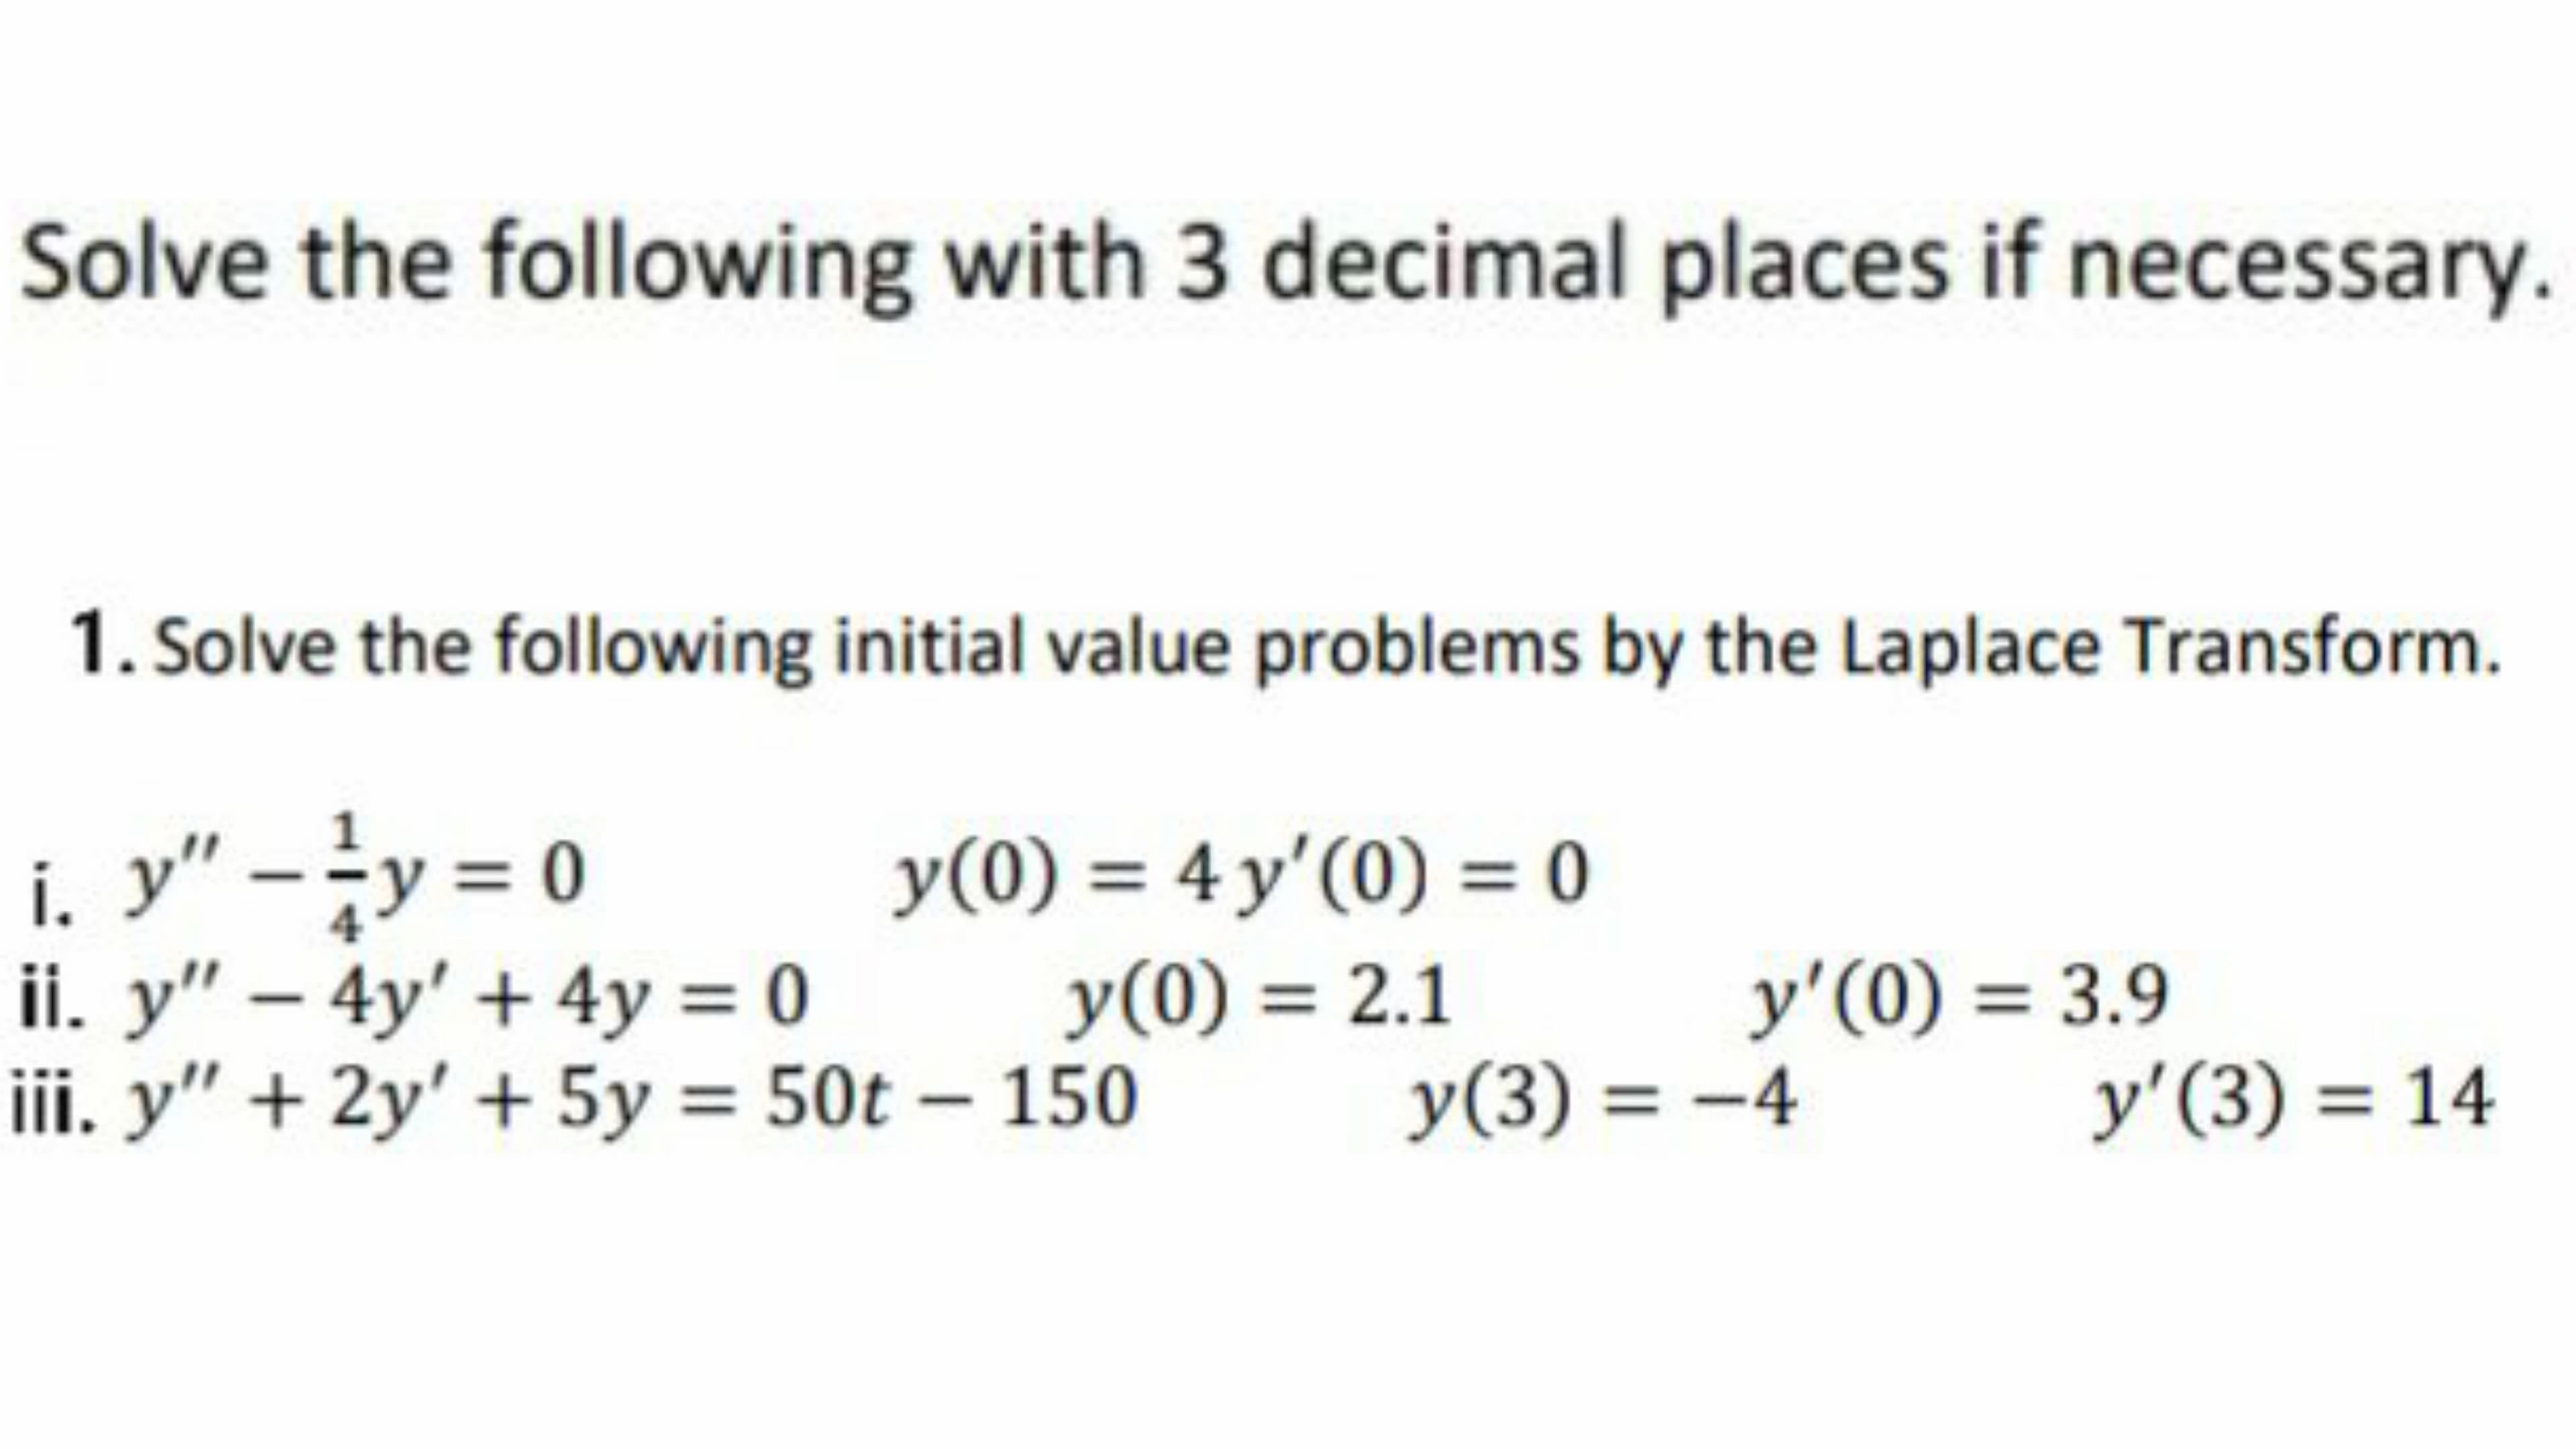 Solve the following with 3 decimal places if necessary.
1. Solve the following initial value problems by the Laplace Transform.
i. y" -y = 0
ii. y" – 4y' + 4y = 0
iii. y" + 2y' + 5y = 50t – 150
y(0) = 4 y'(0) = 0
y(0) = 2.1
4
y'(0) = 3.9
y(3) = -4
y'(3) = 14
%3D
